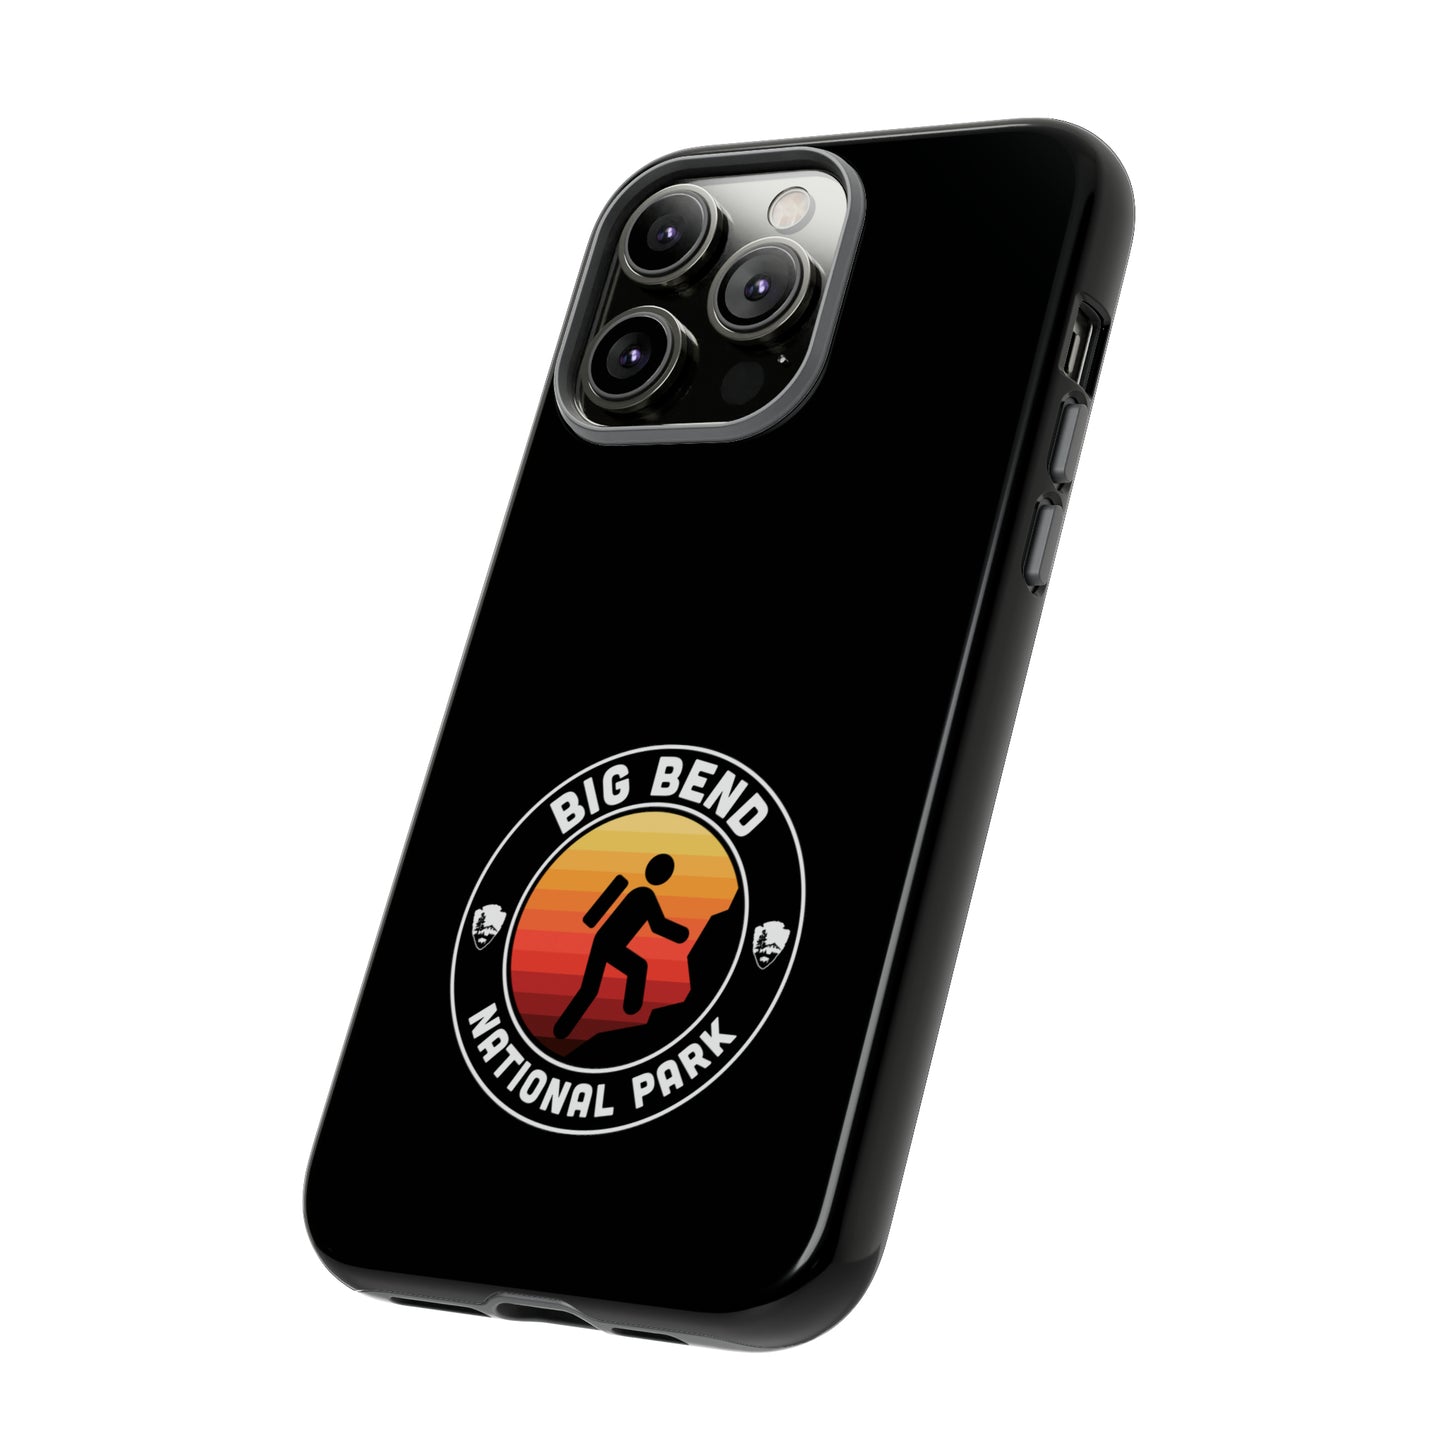 Big Bend National Park Phone Case - Round Emblem Design